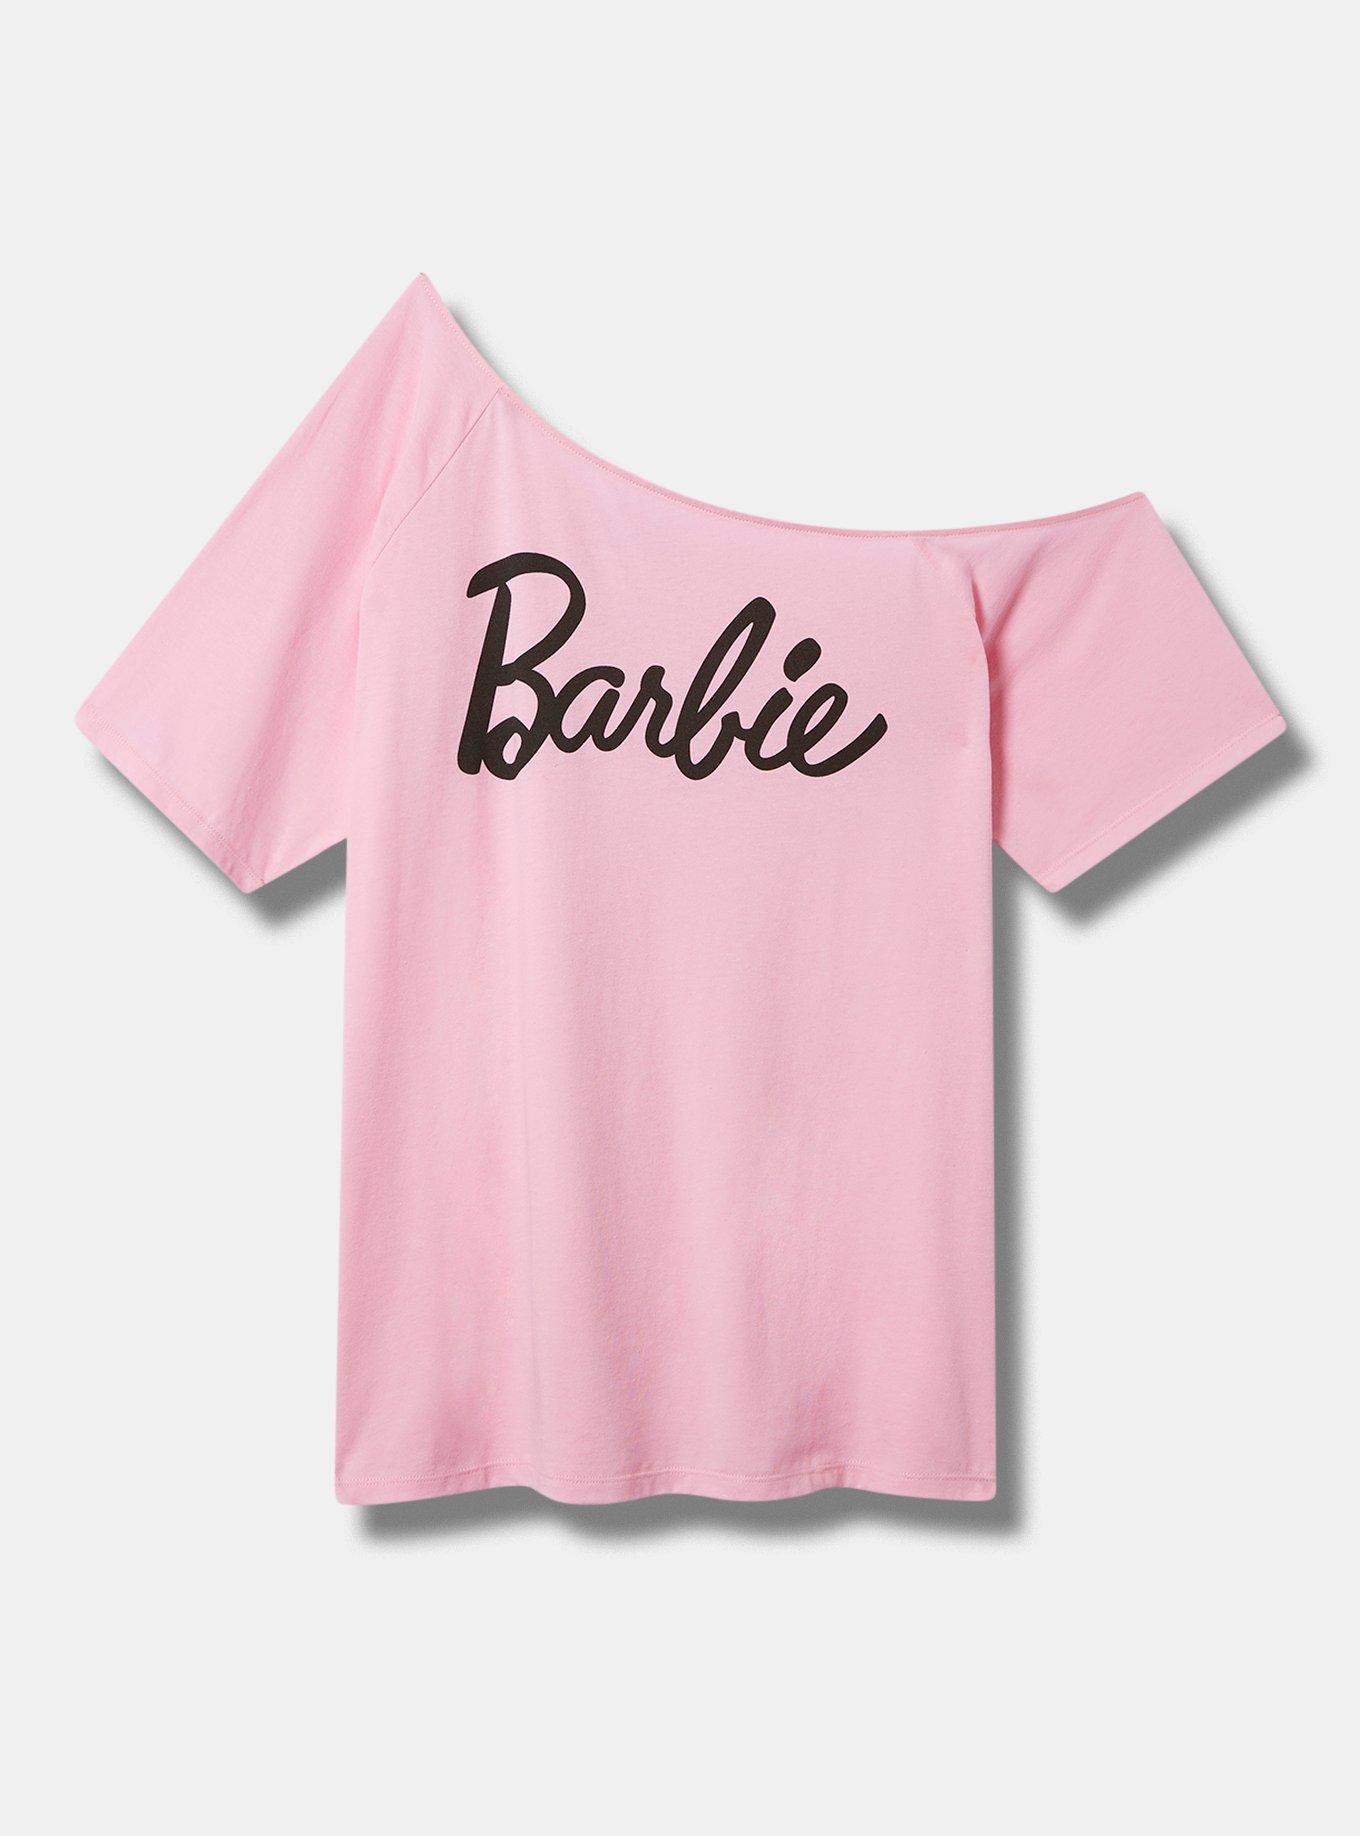 Plus Size - Barbie Classic Fit One Shoulder Top - Cotton Pink - Torrid